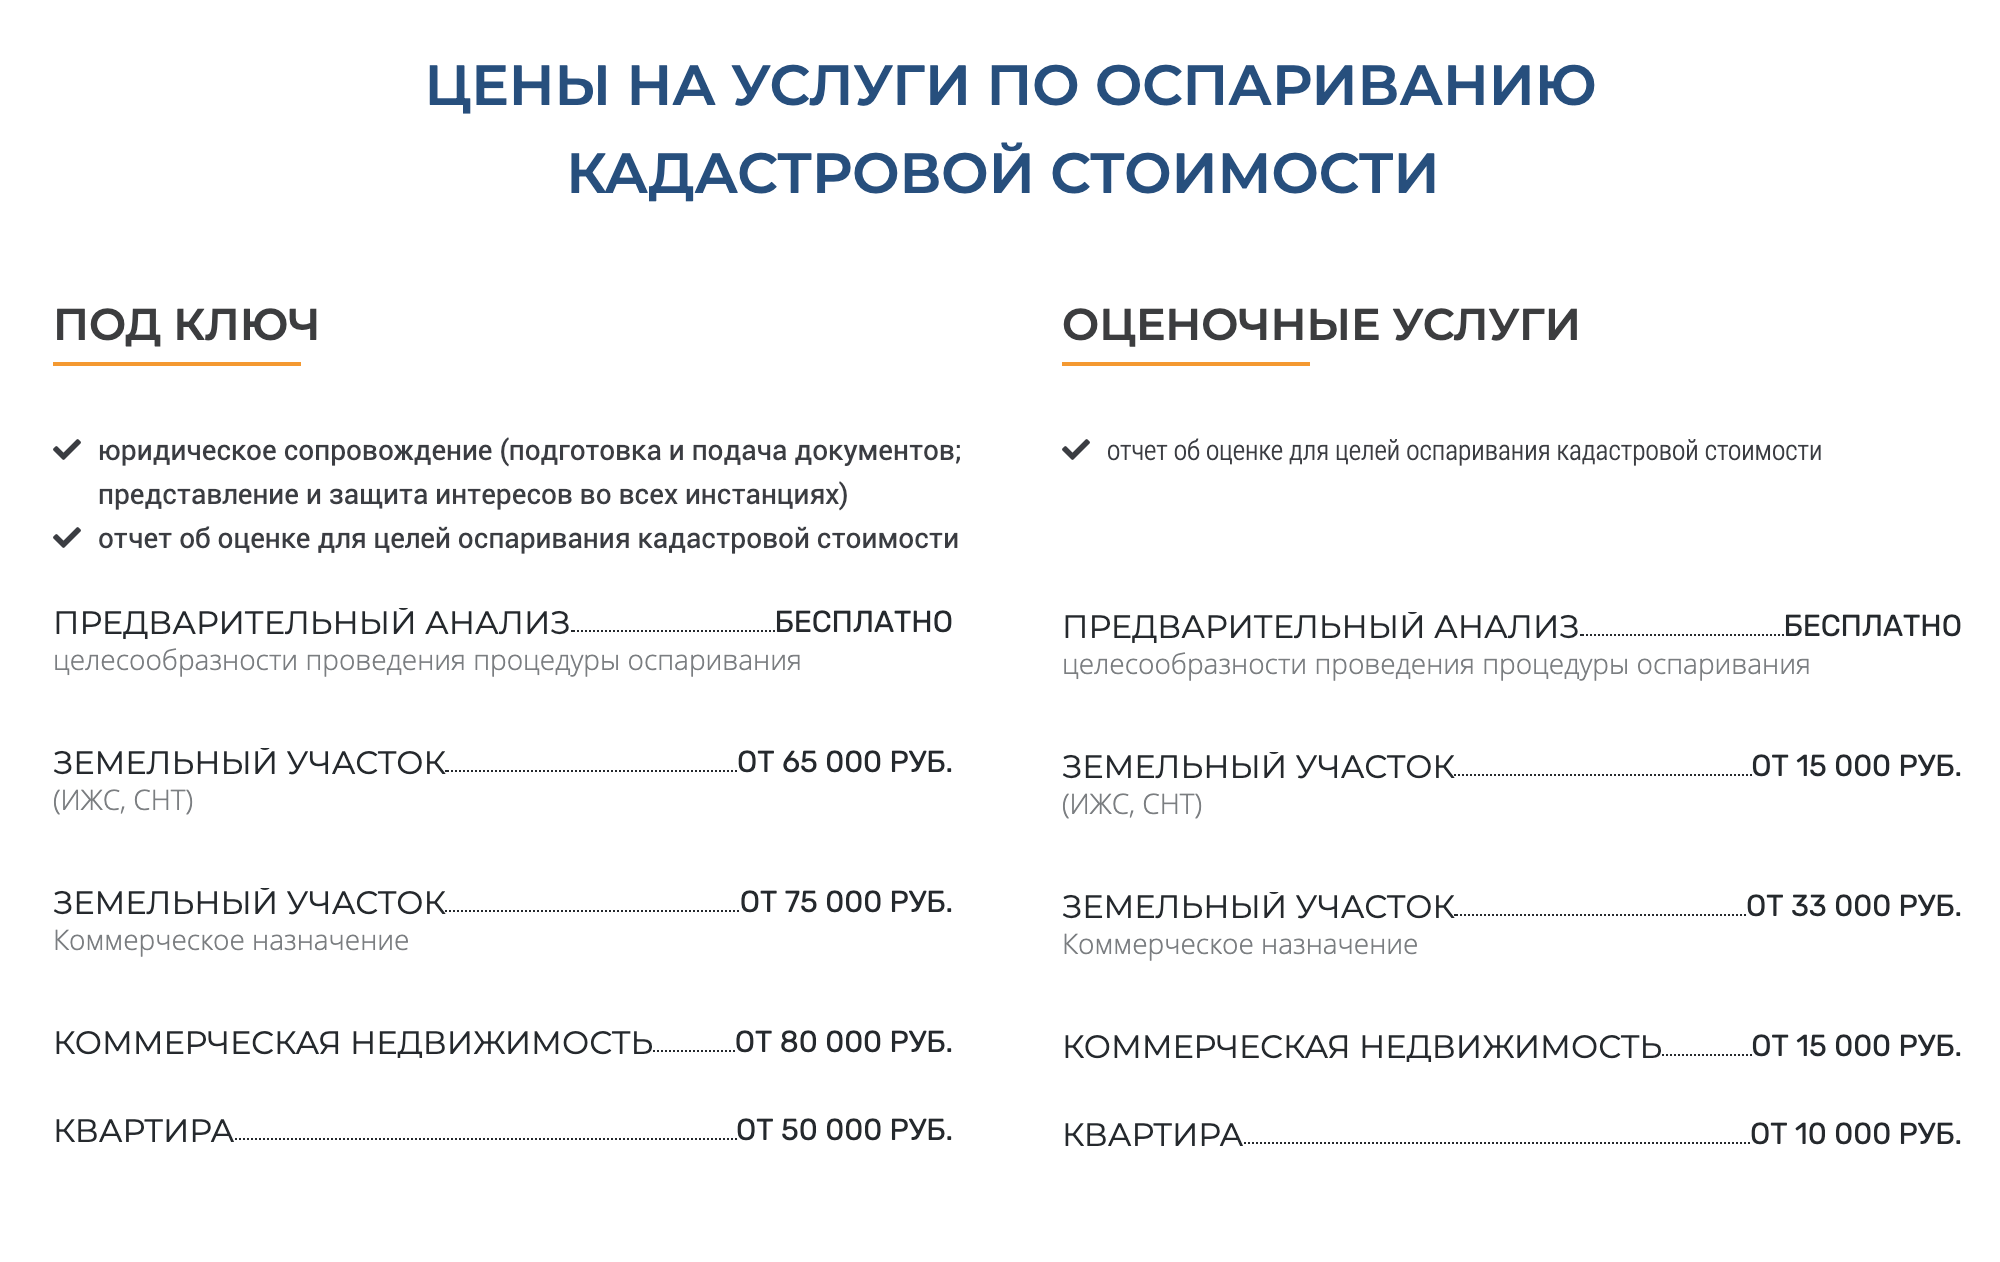 Оценочная фирма в Москве предлагает разную стоимость отчета в зависимости от объекта и его площади